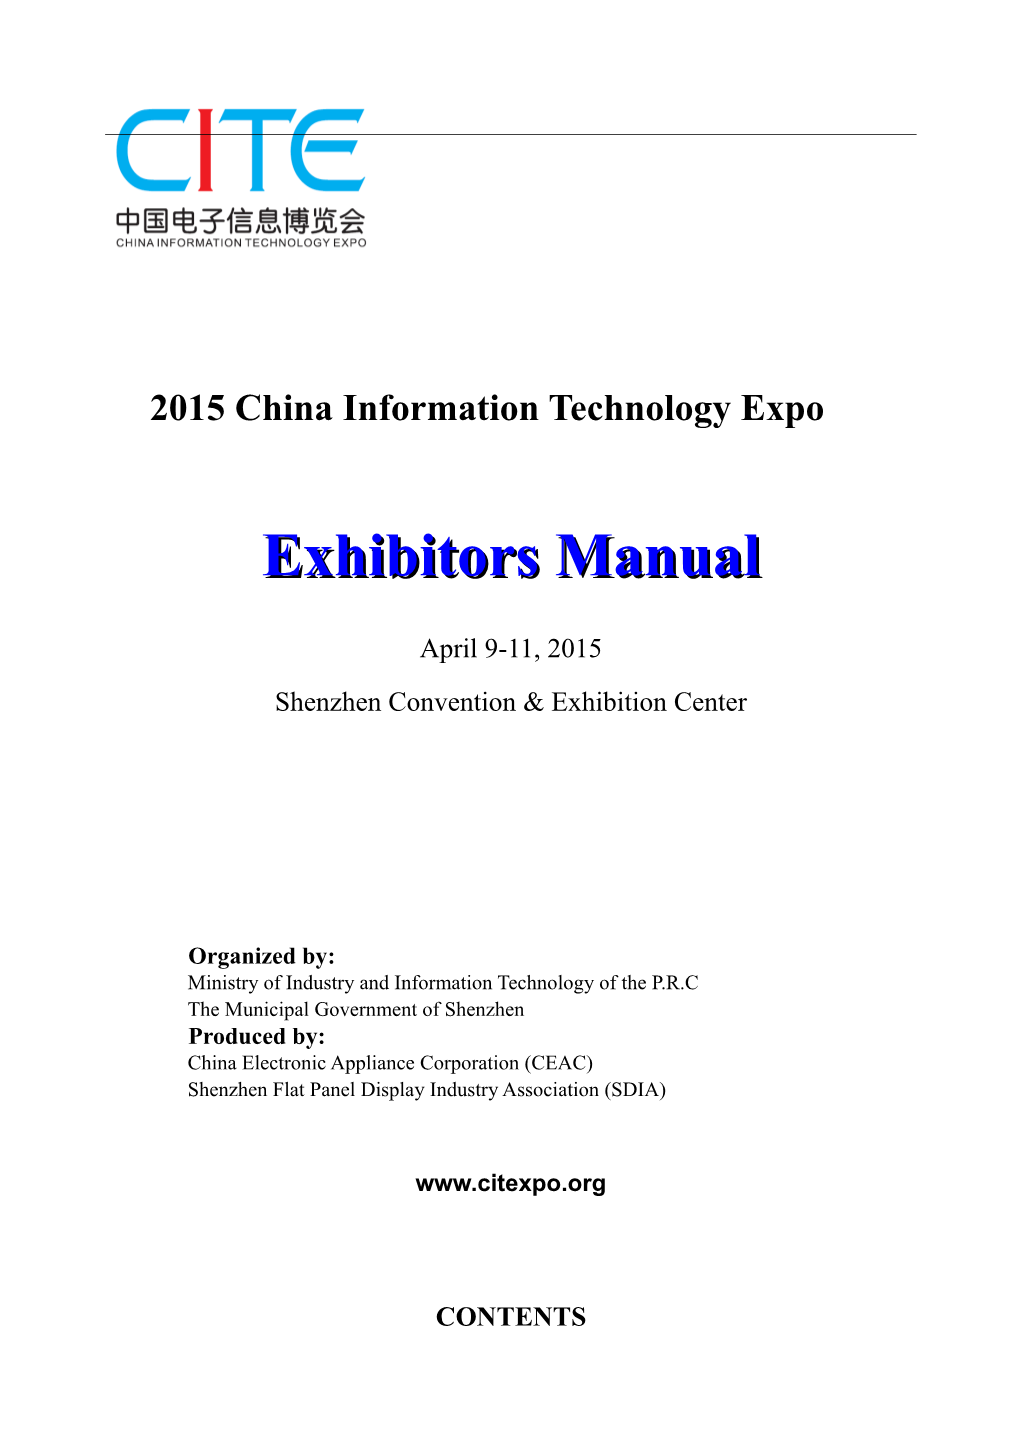 CEF Exhibitor Manual